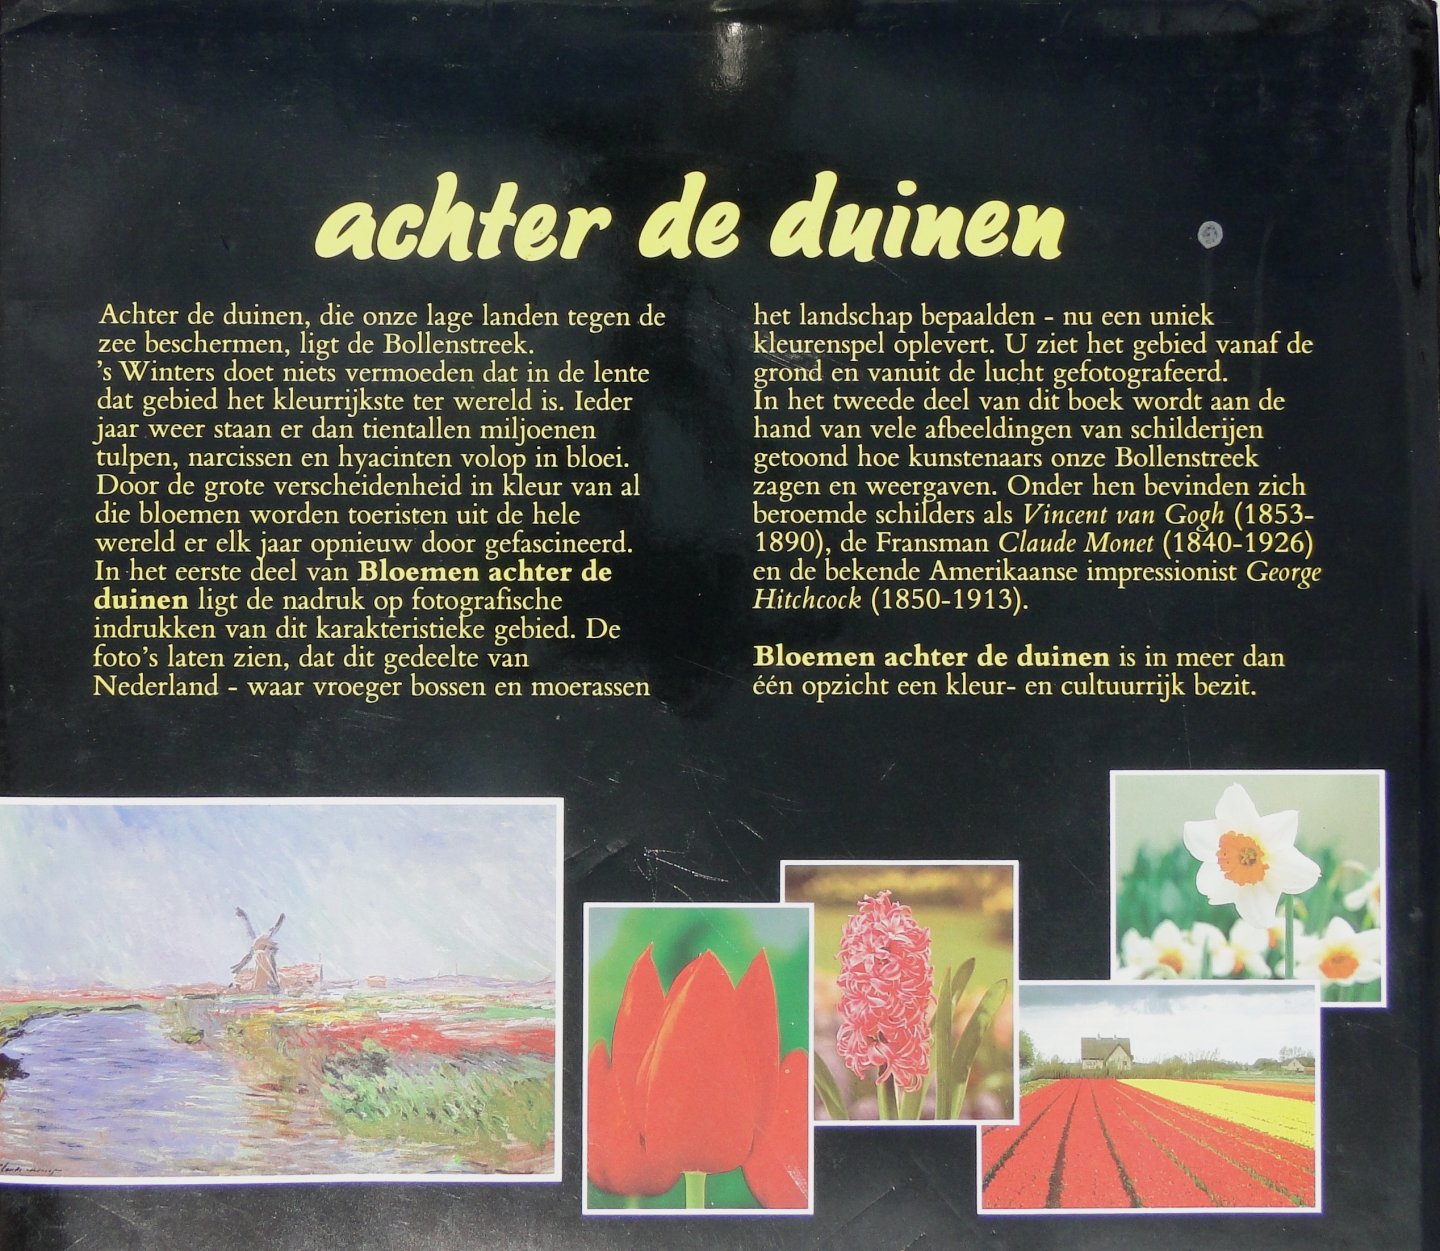 Amsterdam, Herman van ; Voort, Peter van de - Bloemen achter de duinen